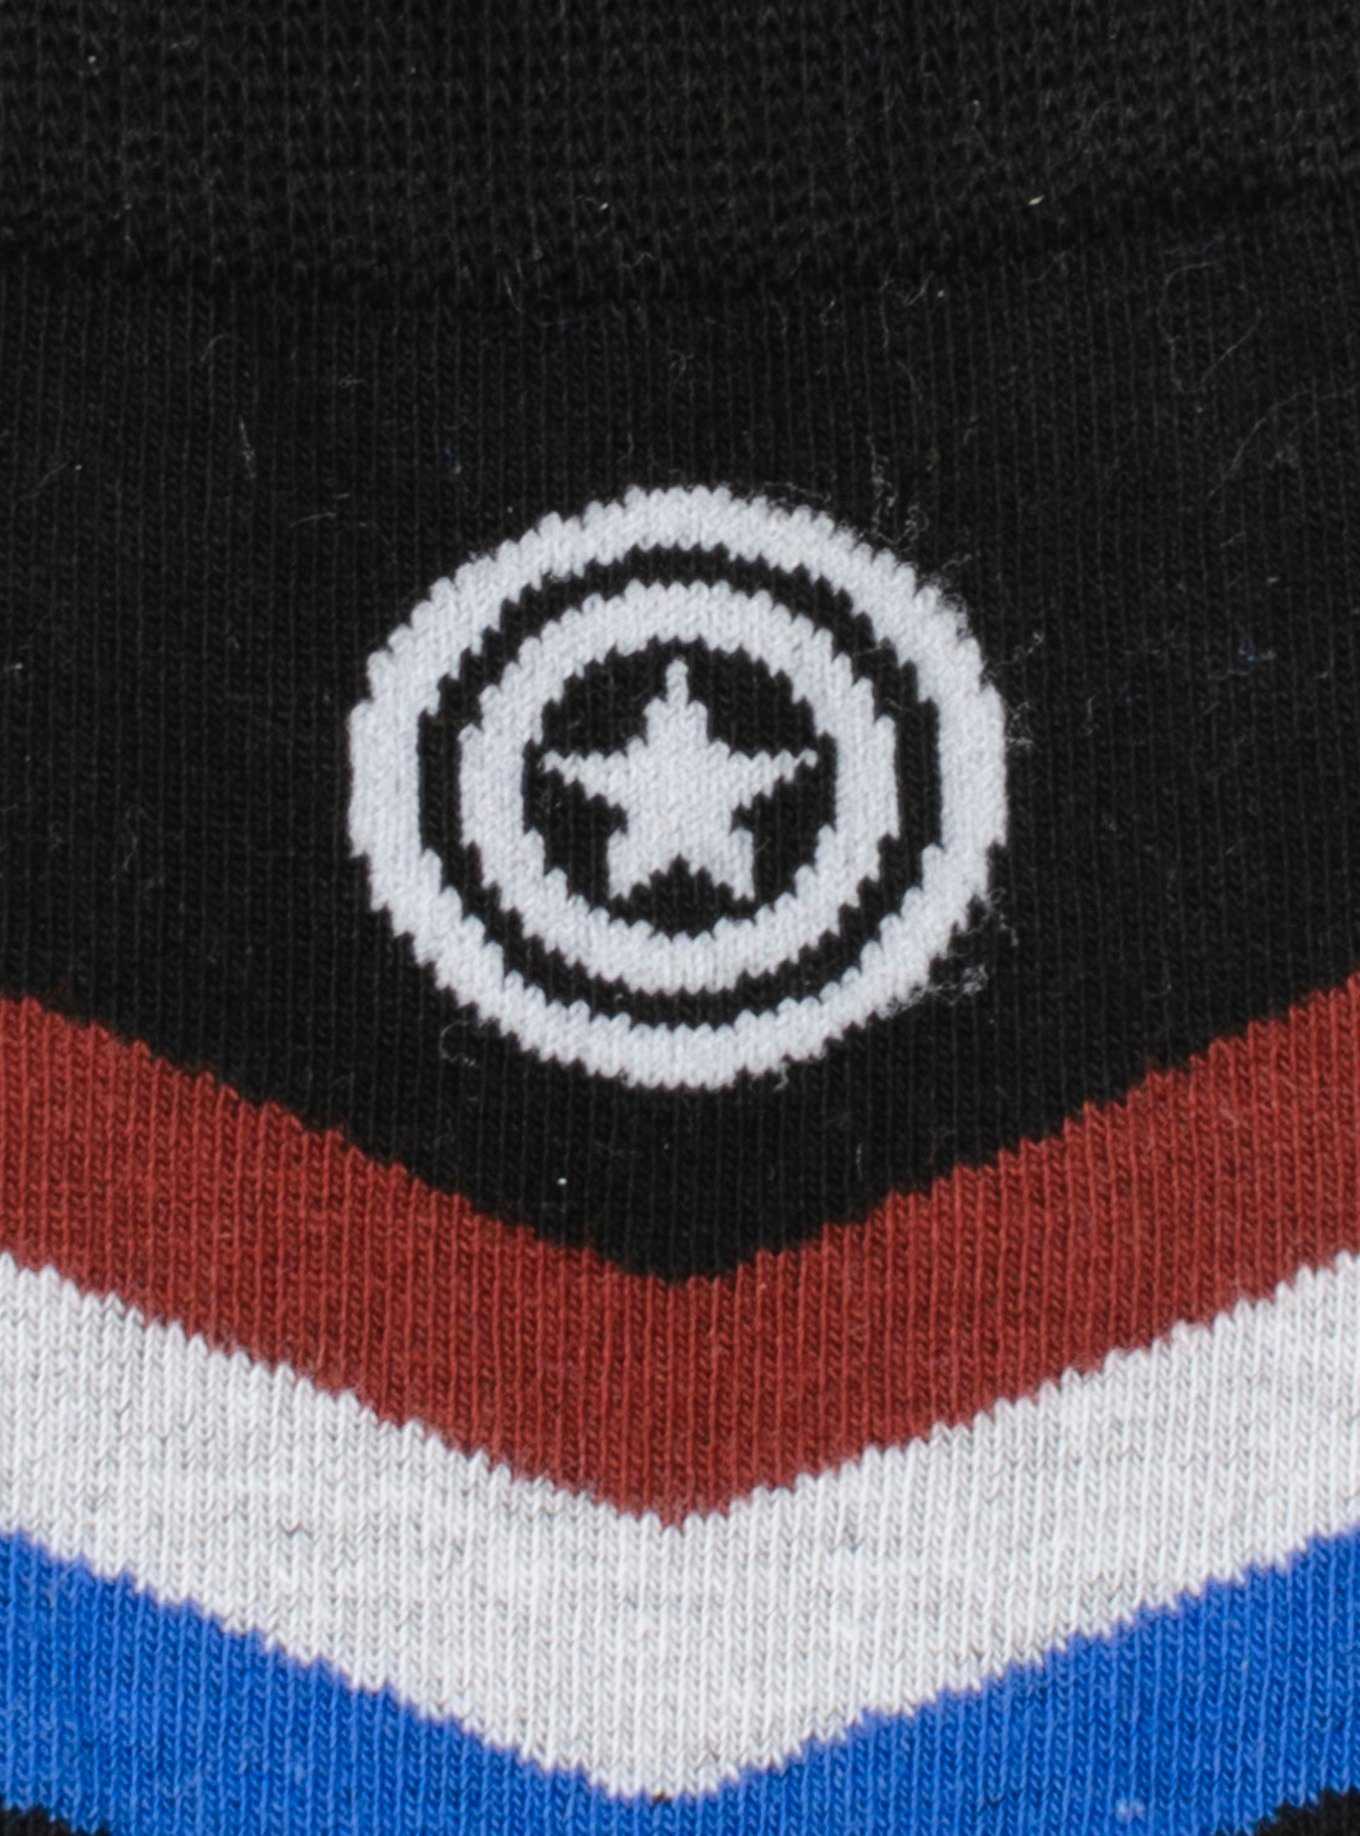 Marvel Captain America Chevron Stripe Men's Socks, , hi-res